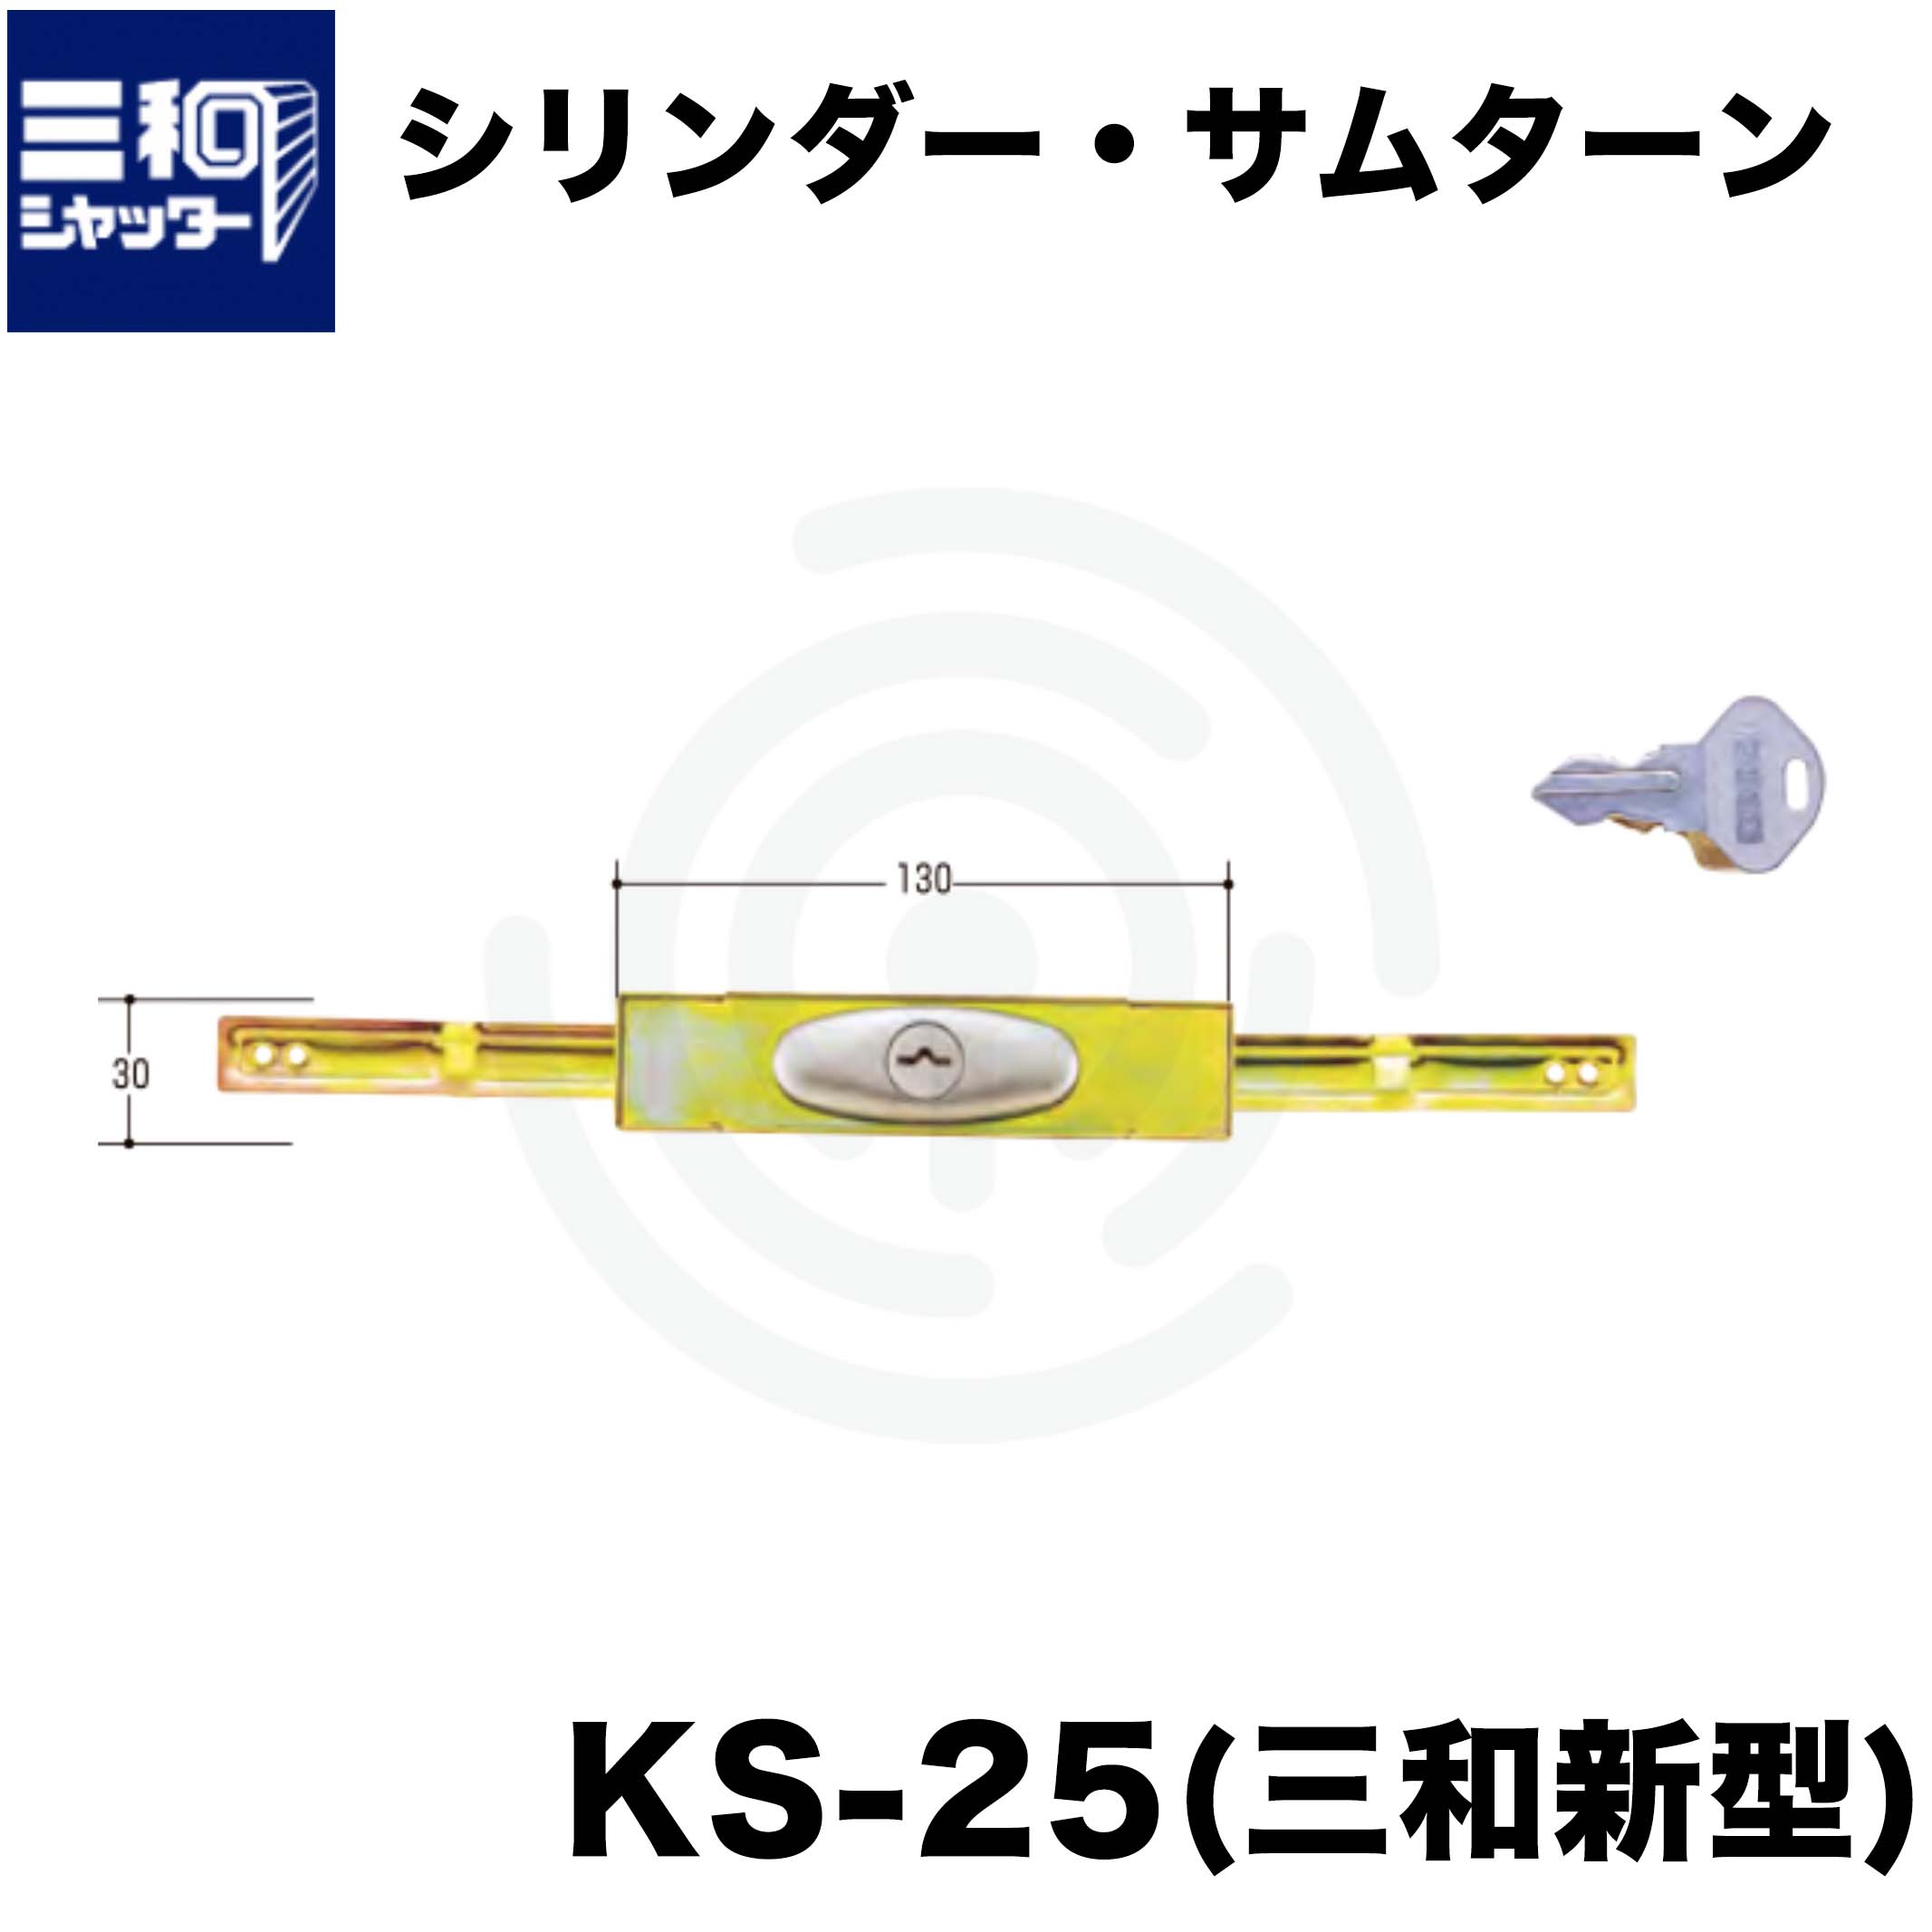 シャッター 鍵 交換 三和 SANWA 新型シャッター錠 KS-25 同番 鍵番号2572 10セット - 3